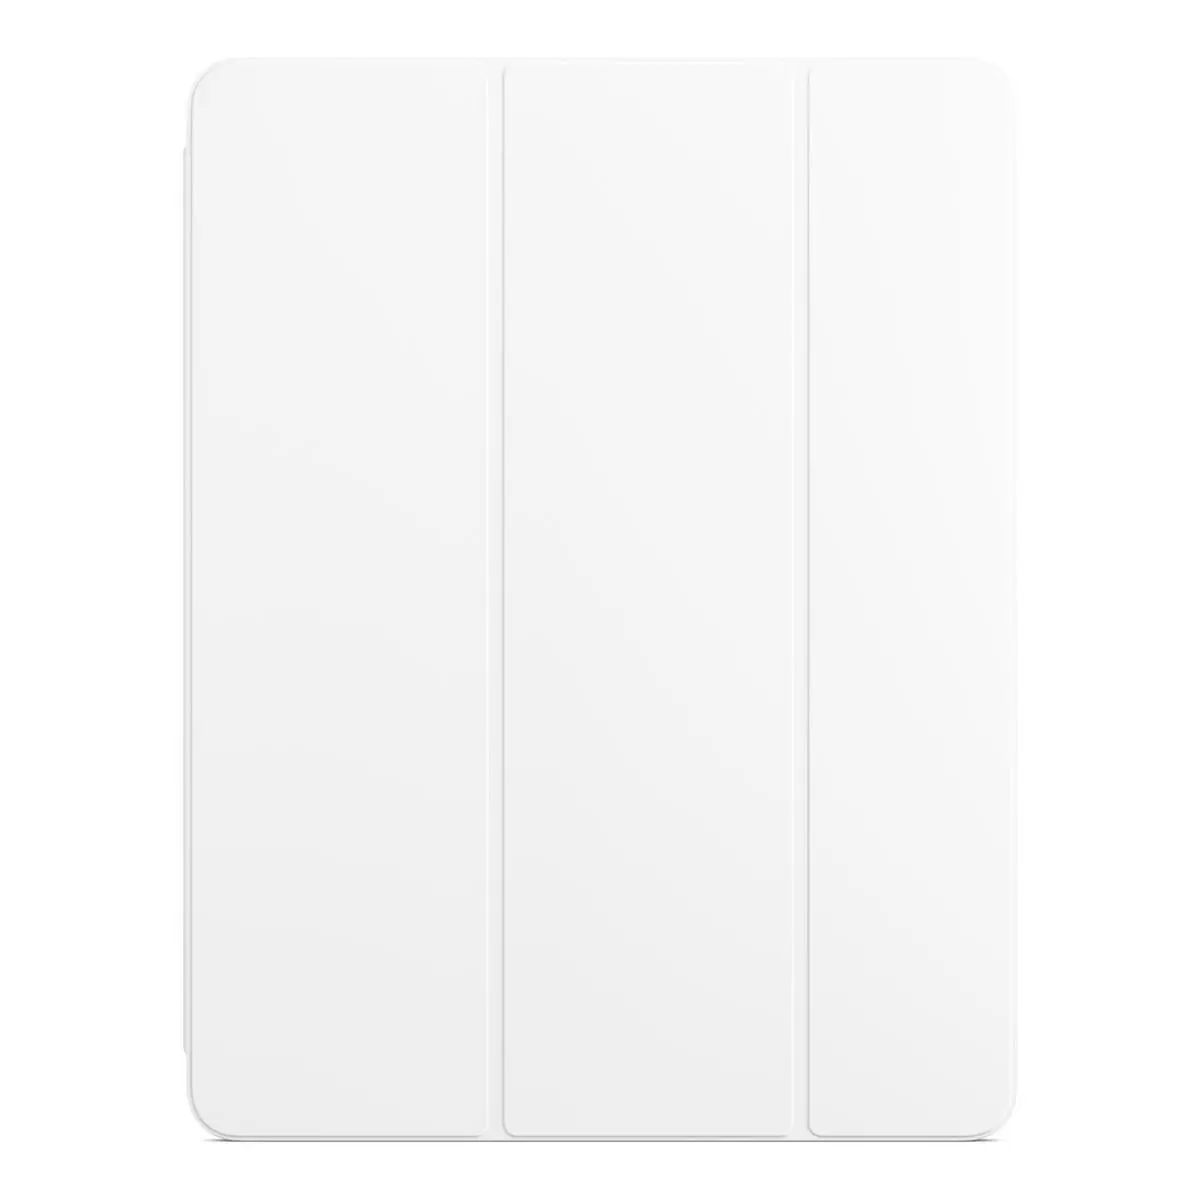 Apple 聰穎雙面夾 適用於 iPad Pro 12.9 吋 (第 6 代) 白色